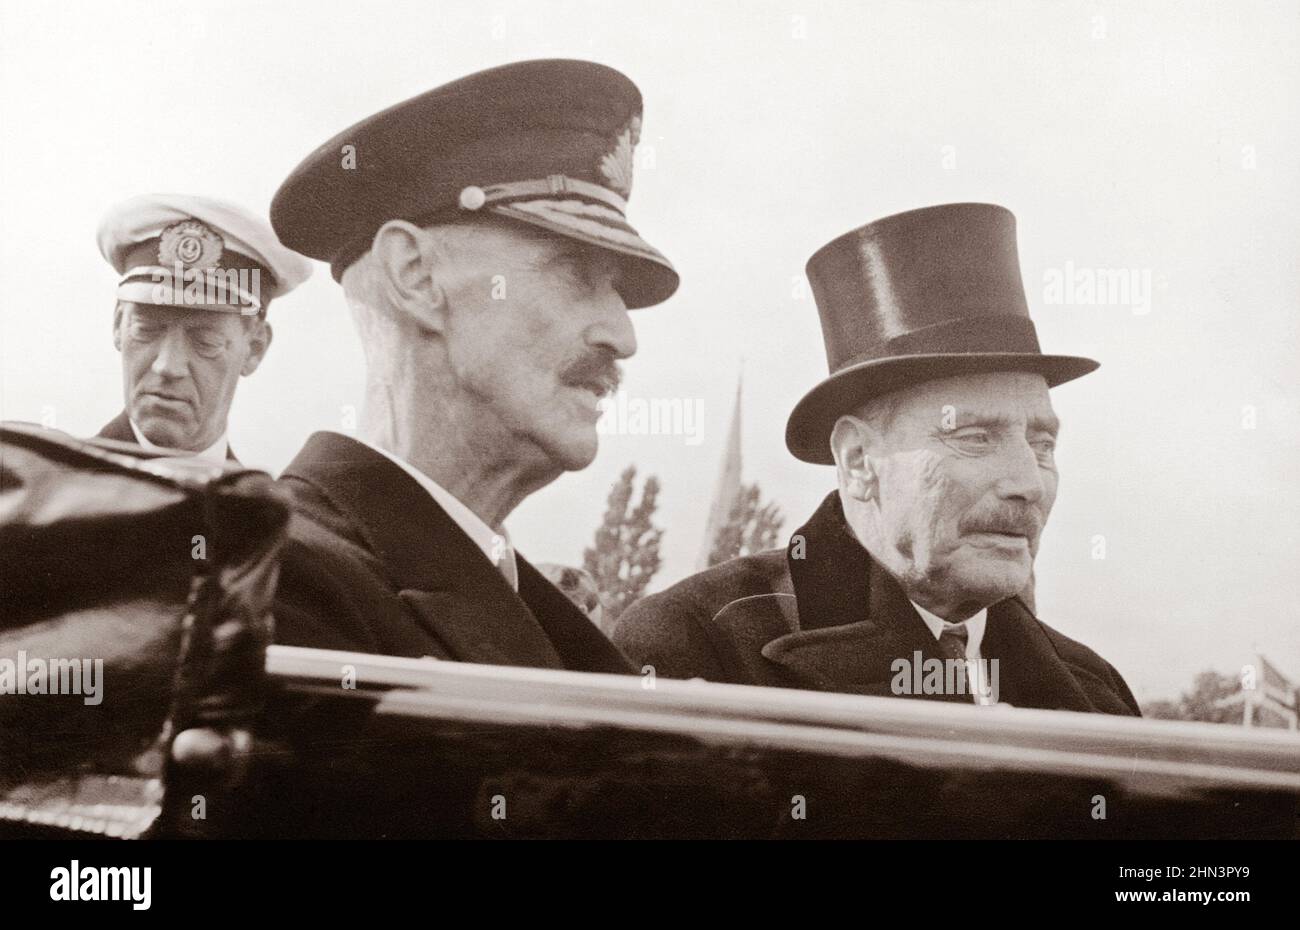 Photo d'époque de Haakon VII de Norvège et Christian X du Danemark à l'arrivée du roi Haakon à Copenhague. 22 septembre 1945 Banque D'Images